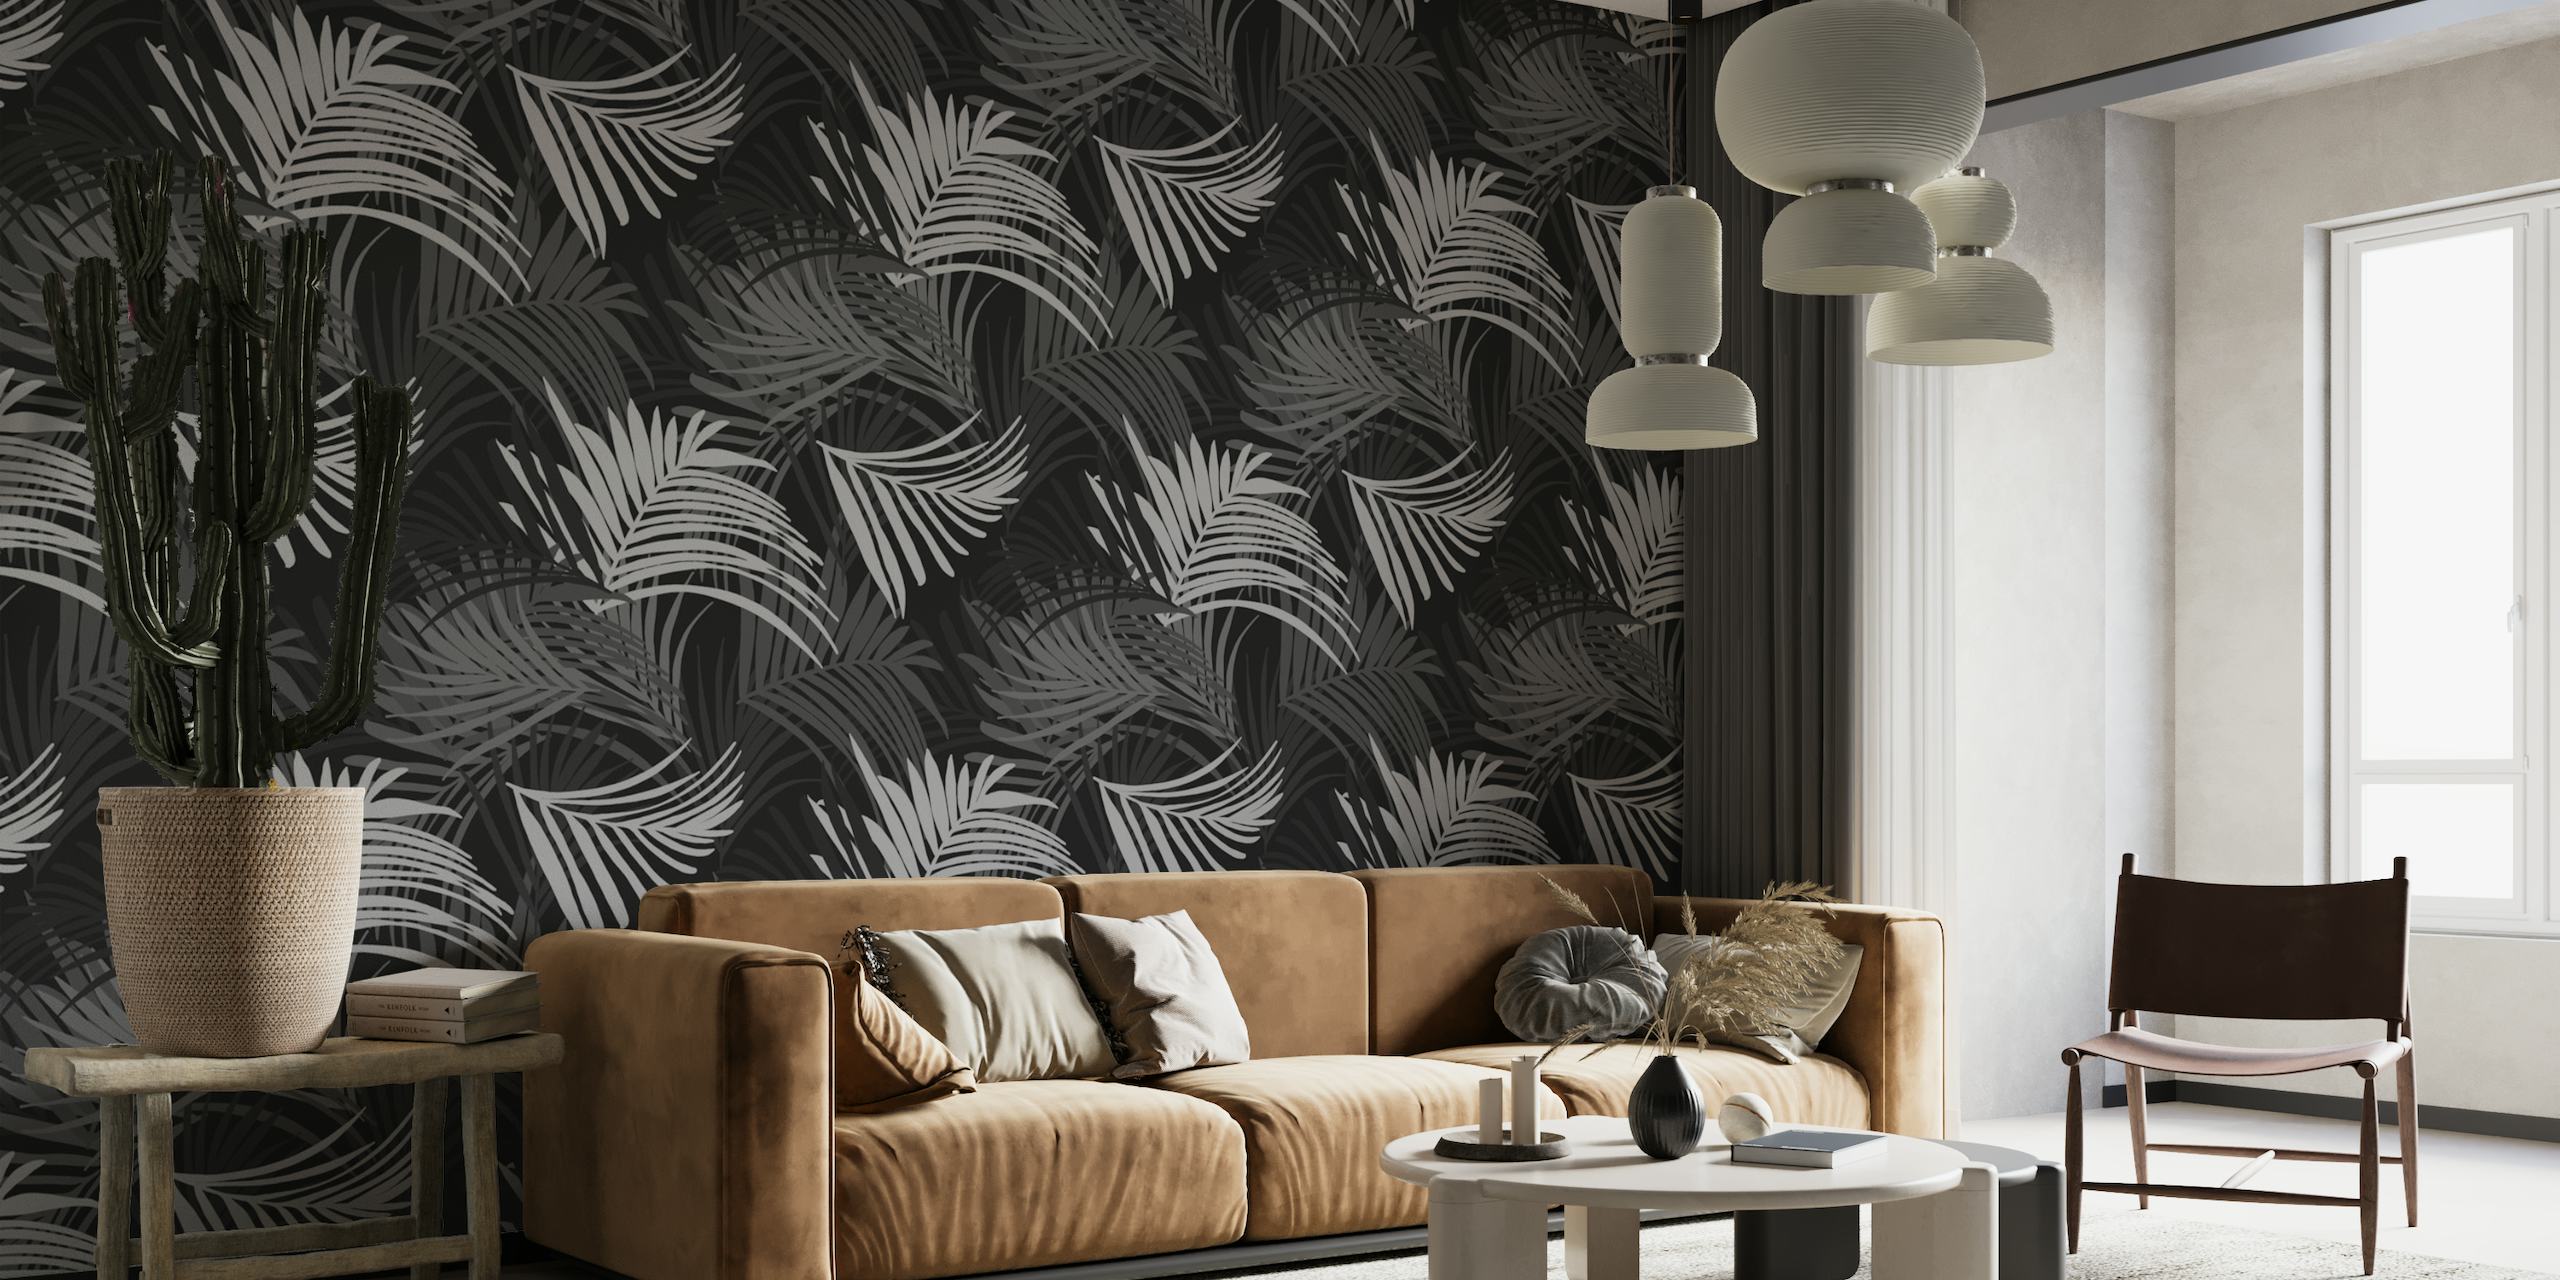 Černobílá fototapeta se vzorem tropických palmových listů, ideální pro vytvoření poklidného motivu džungle.